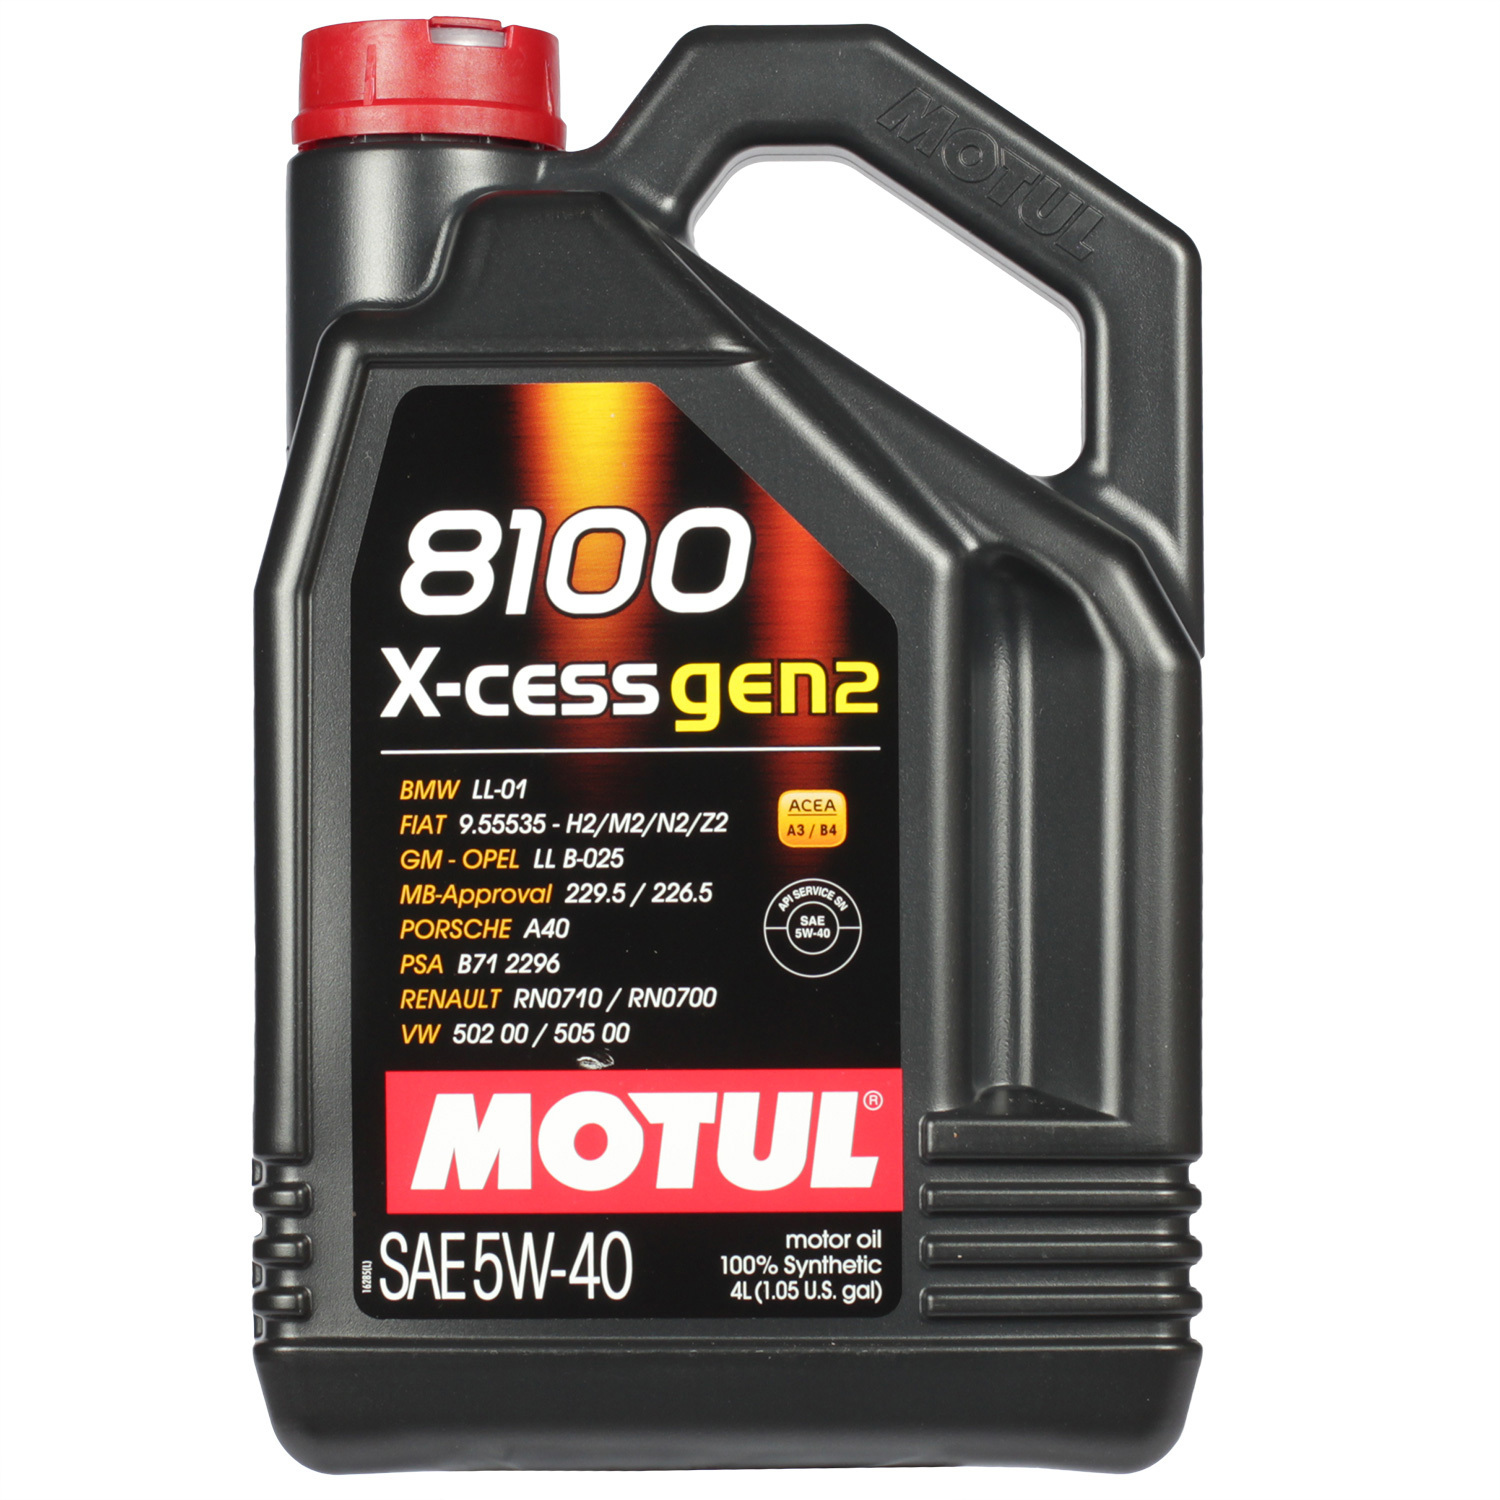 Motul Моторное масло Motul 8100 X-cess gen2 5W-40, 4 л motul моторное масло motul 8100 x clean gen2 5w 40 5 л